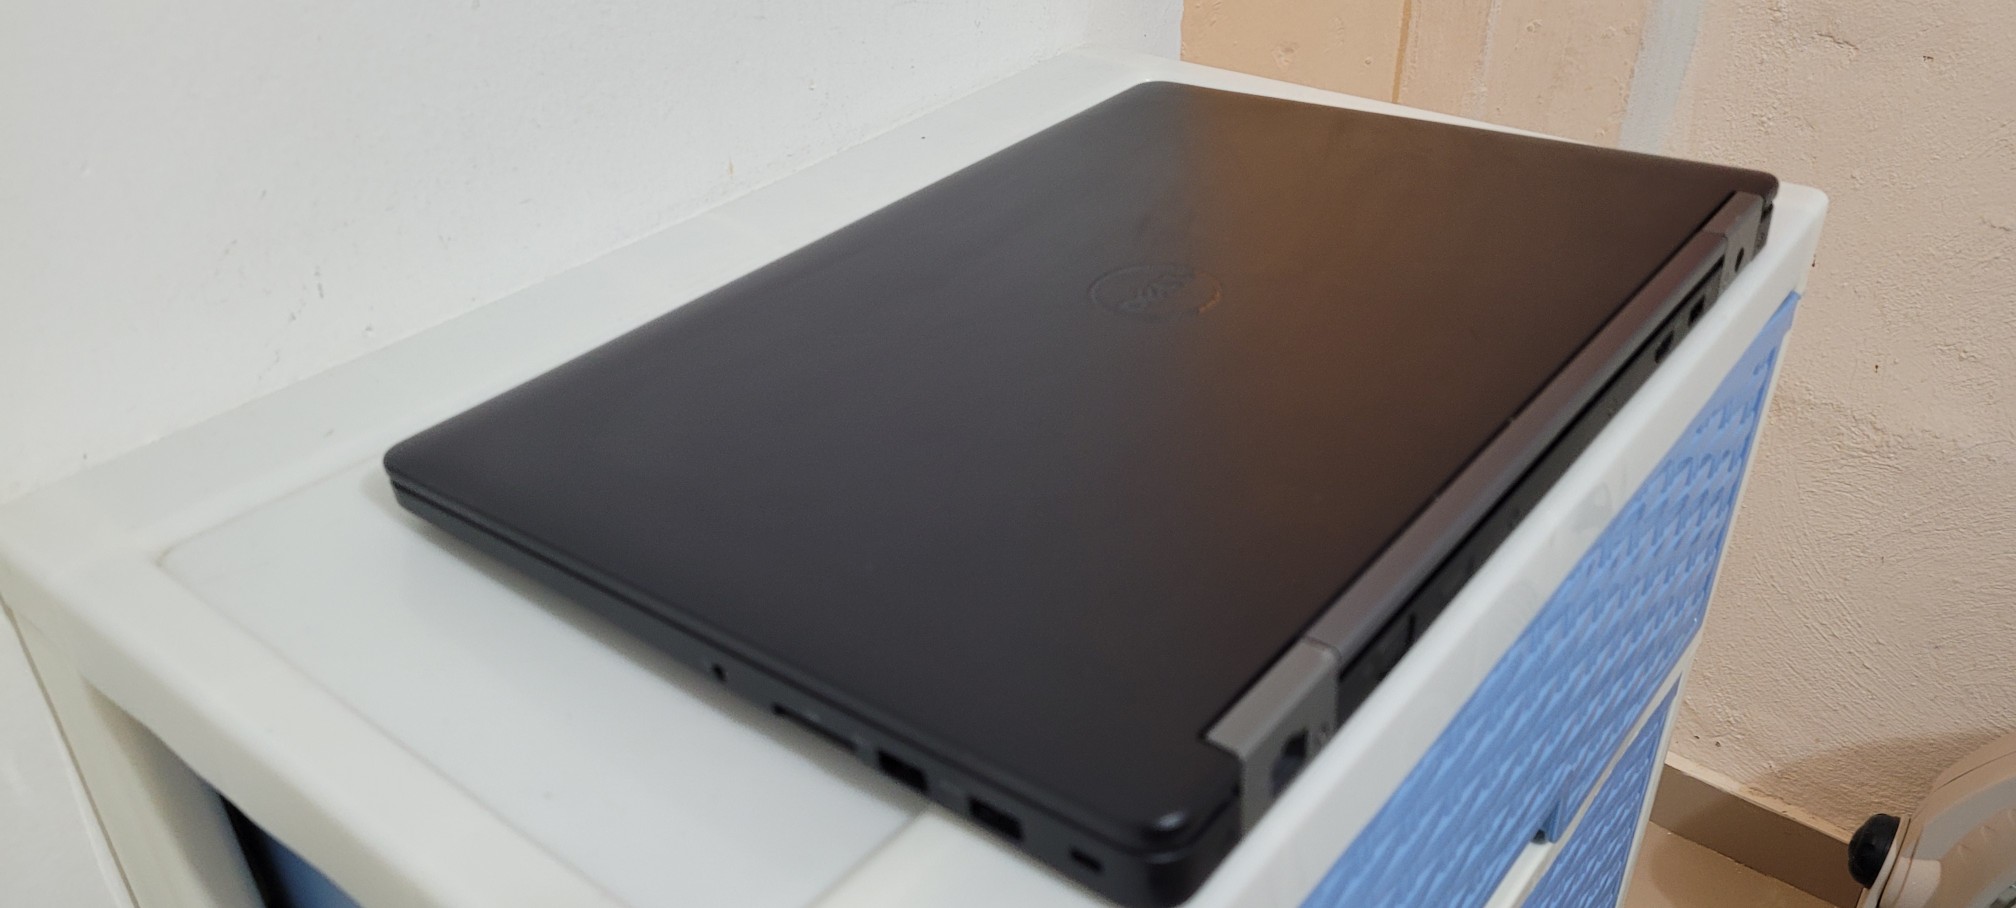 computadoras y laptops - Dell 5570 de 17 Pulg Core i7 Ram 16gb ddr4 SSD 512GB Video Dedicado 2gb 2